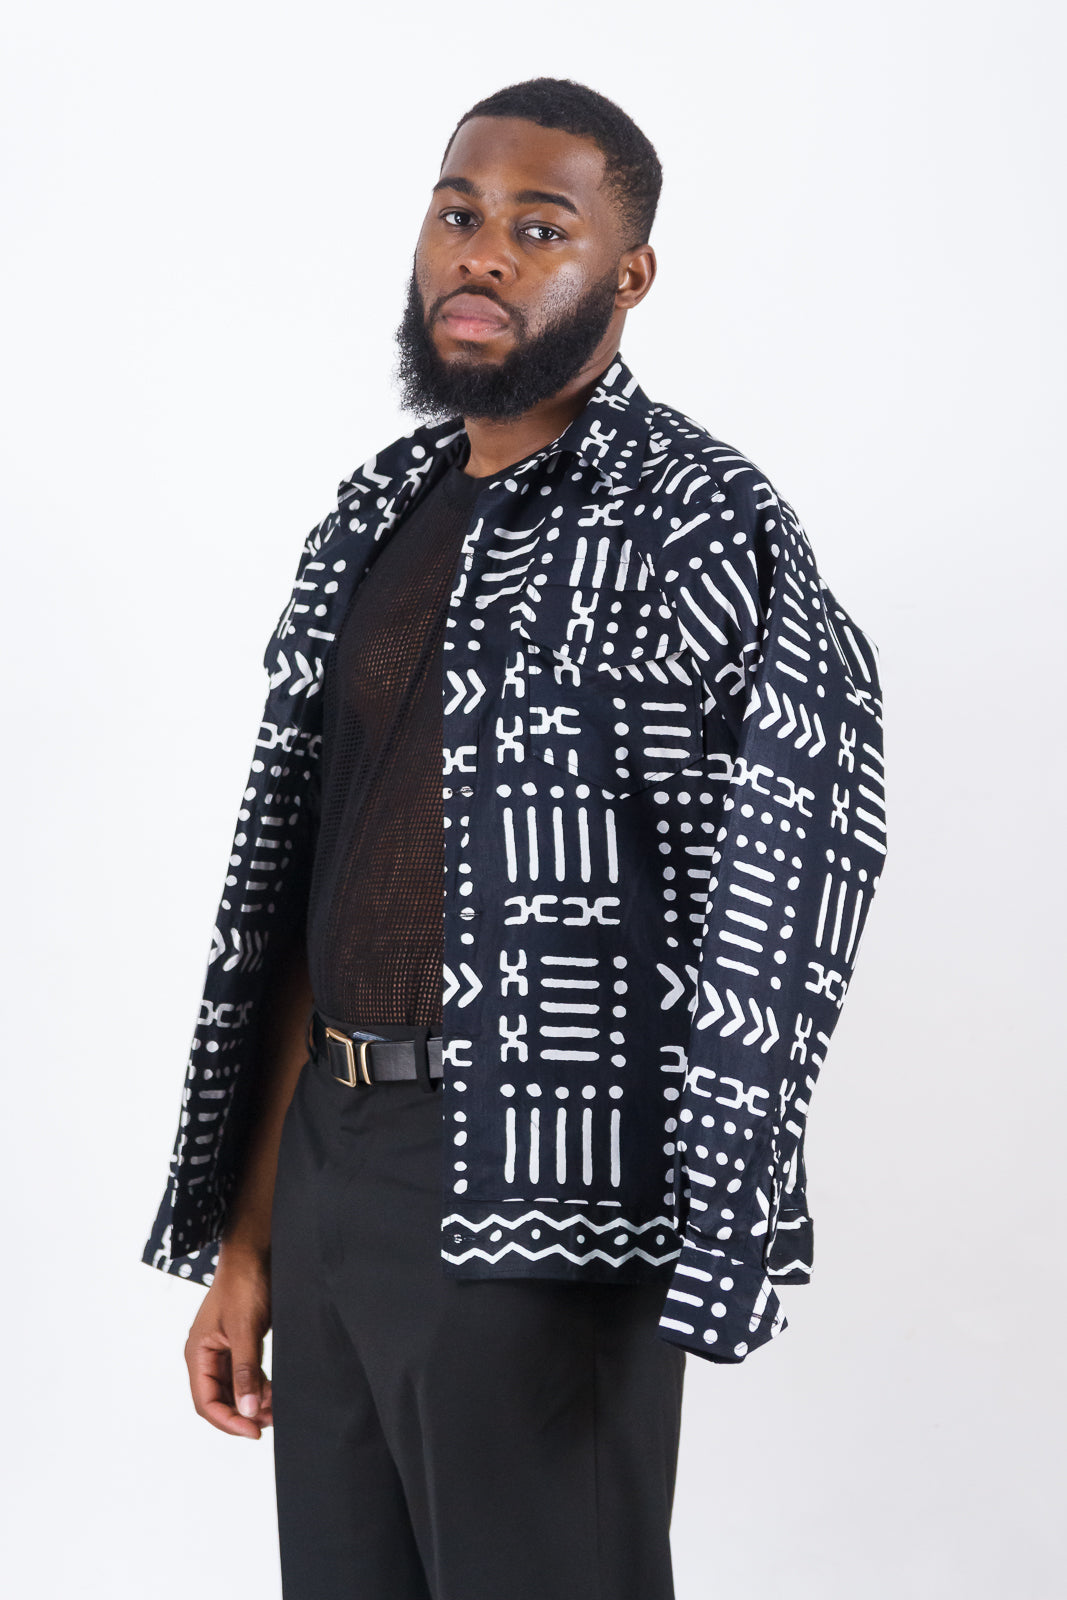 OBIDIKE Black & White African Print jacket